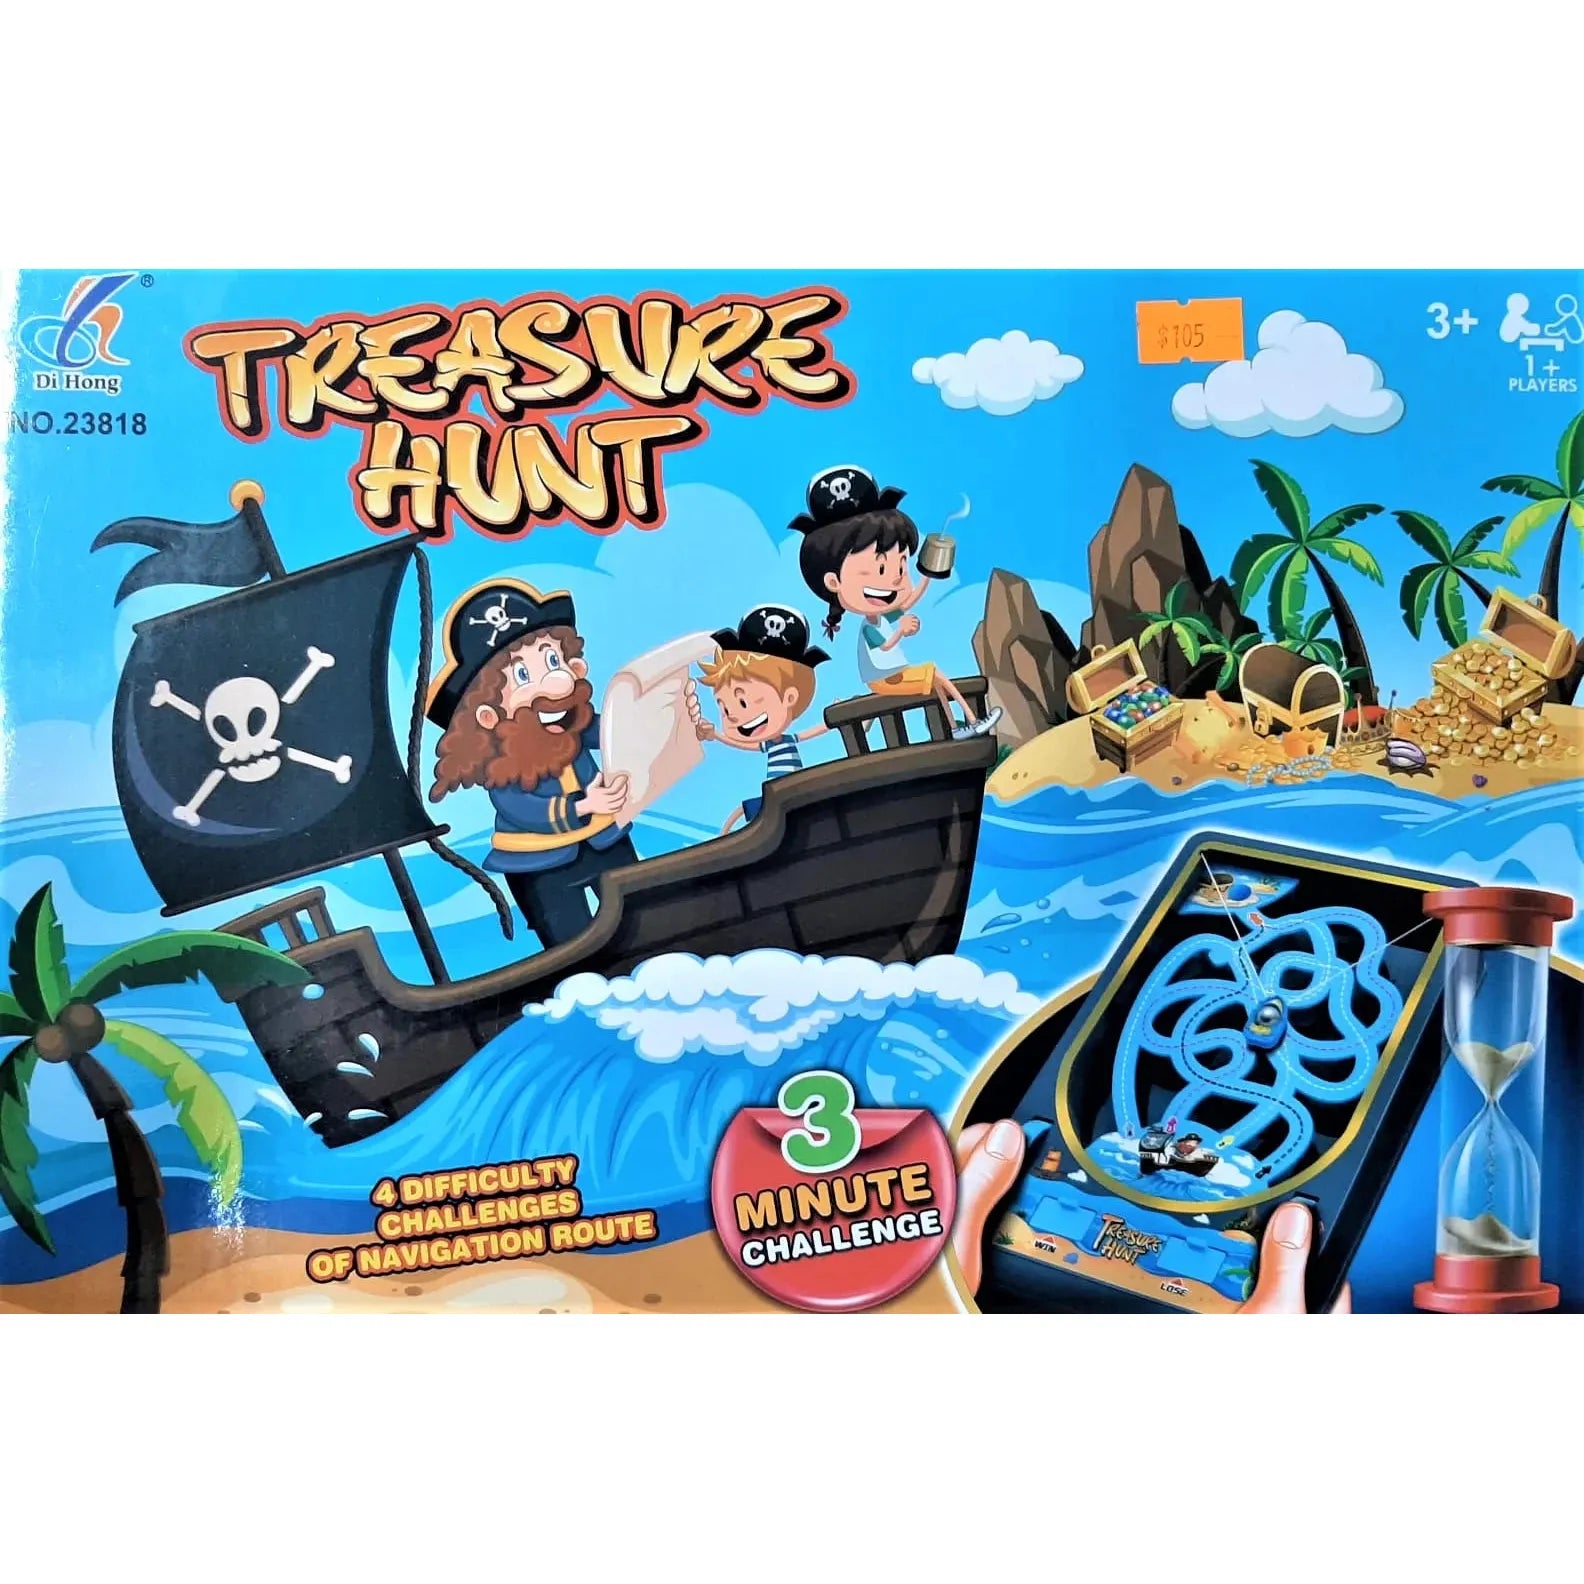 Di Hong Treasure Hunt Game 23818